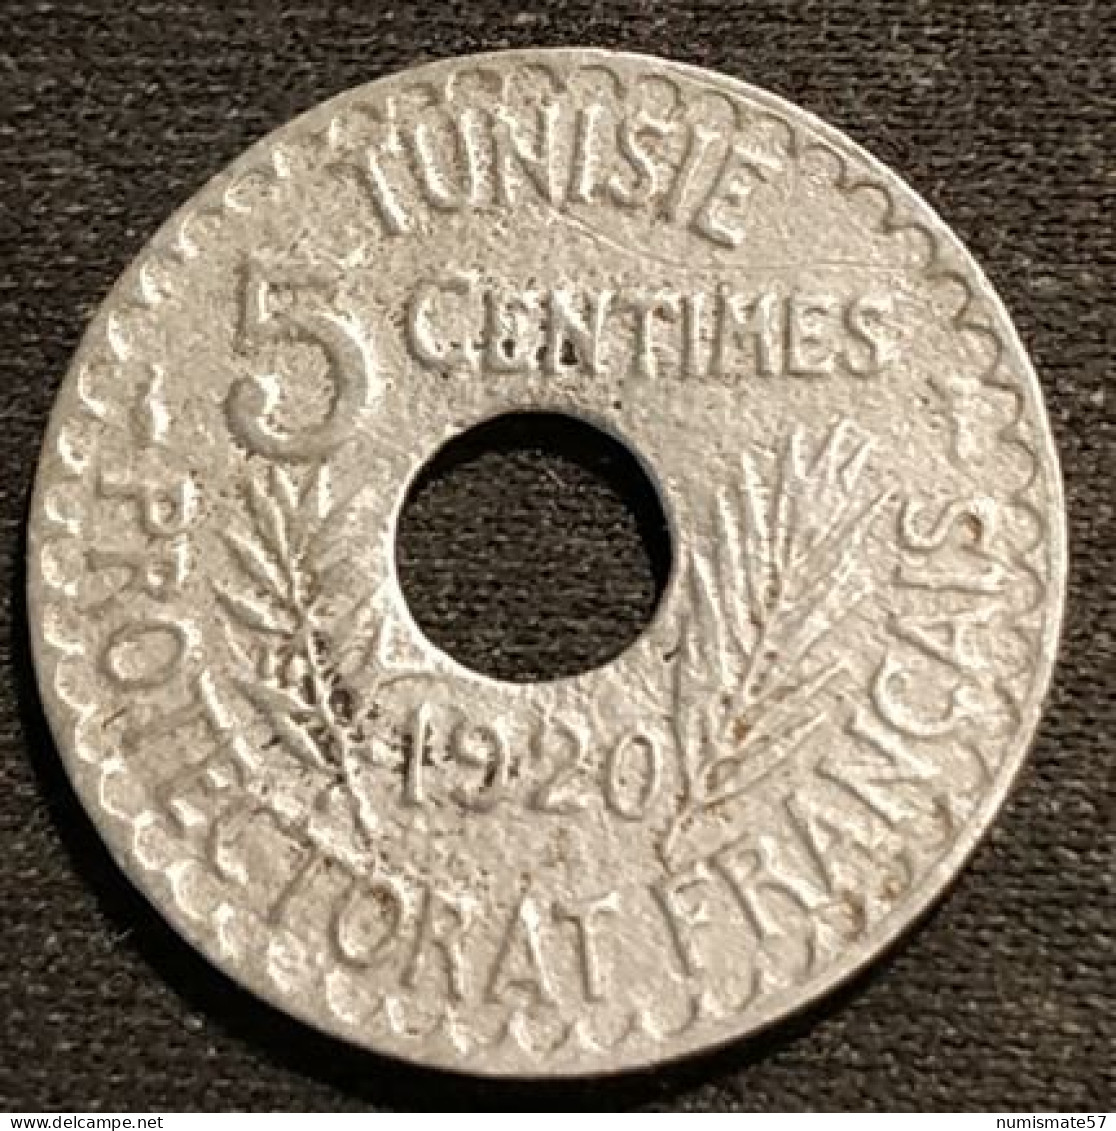 TUNISIE - TUNISIA - 5 CENTIMES 1920 ( 1339 ) - Grand Module - Muhammad Al-Nasir - Protectorat Français - KM 242 - Tunisia